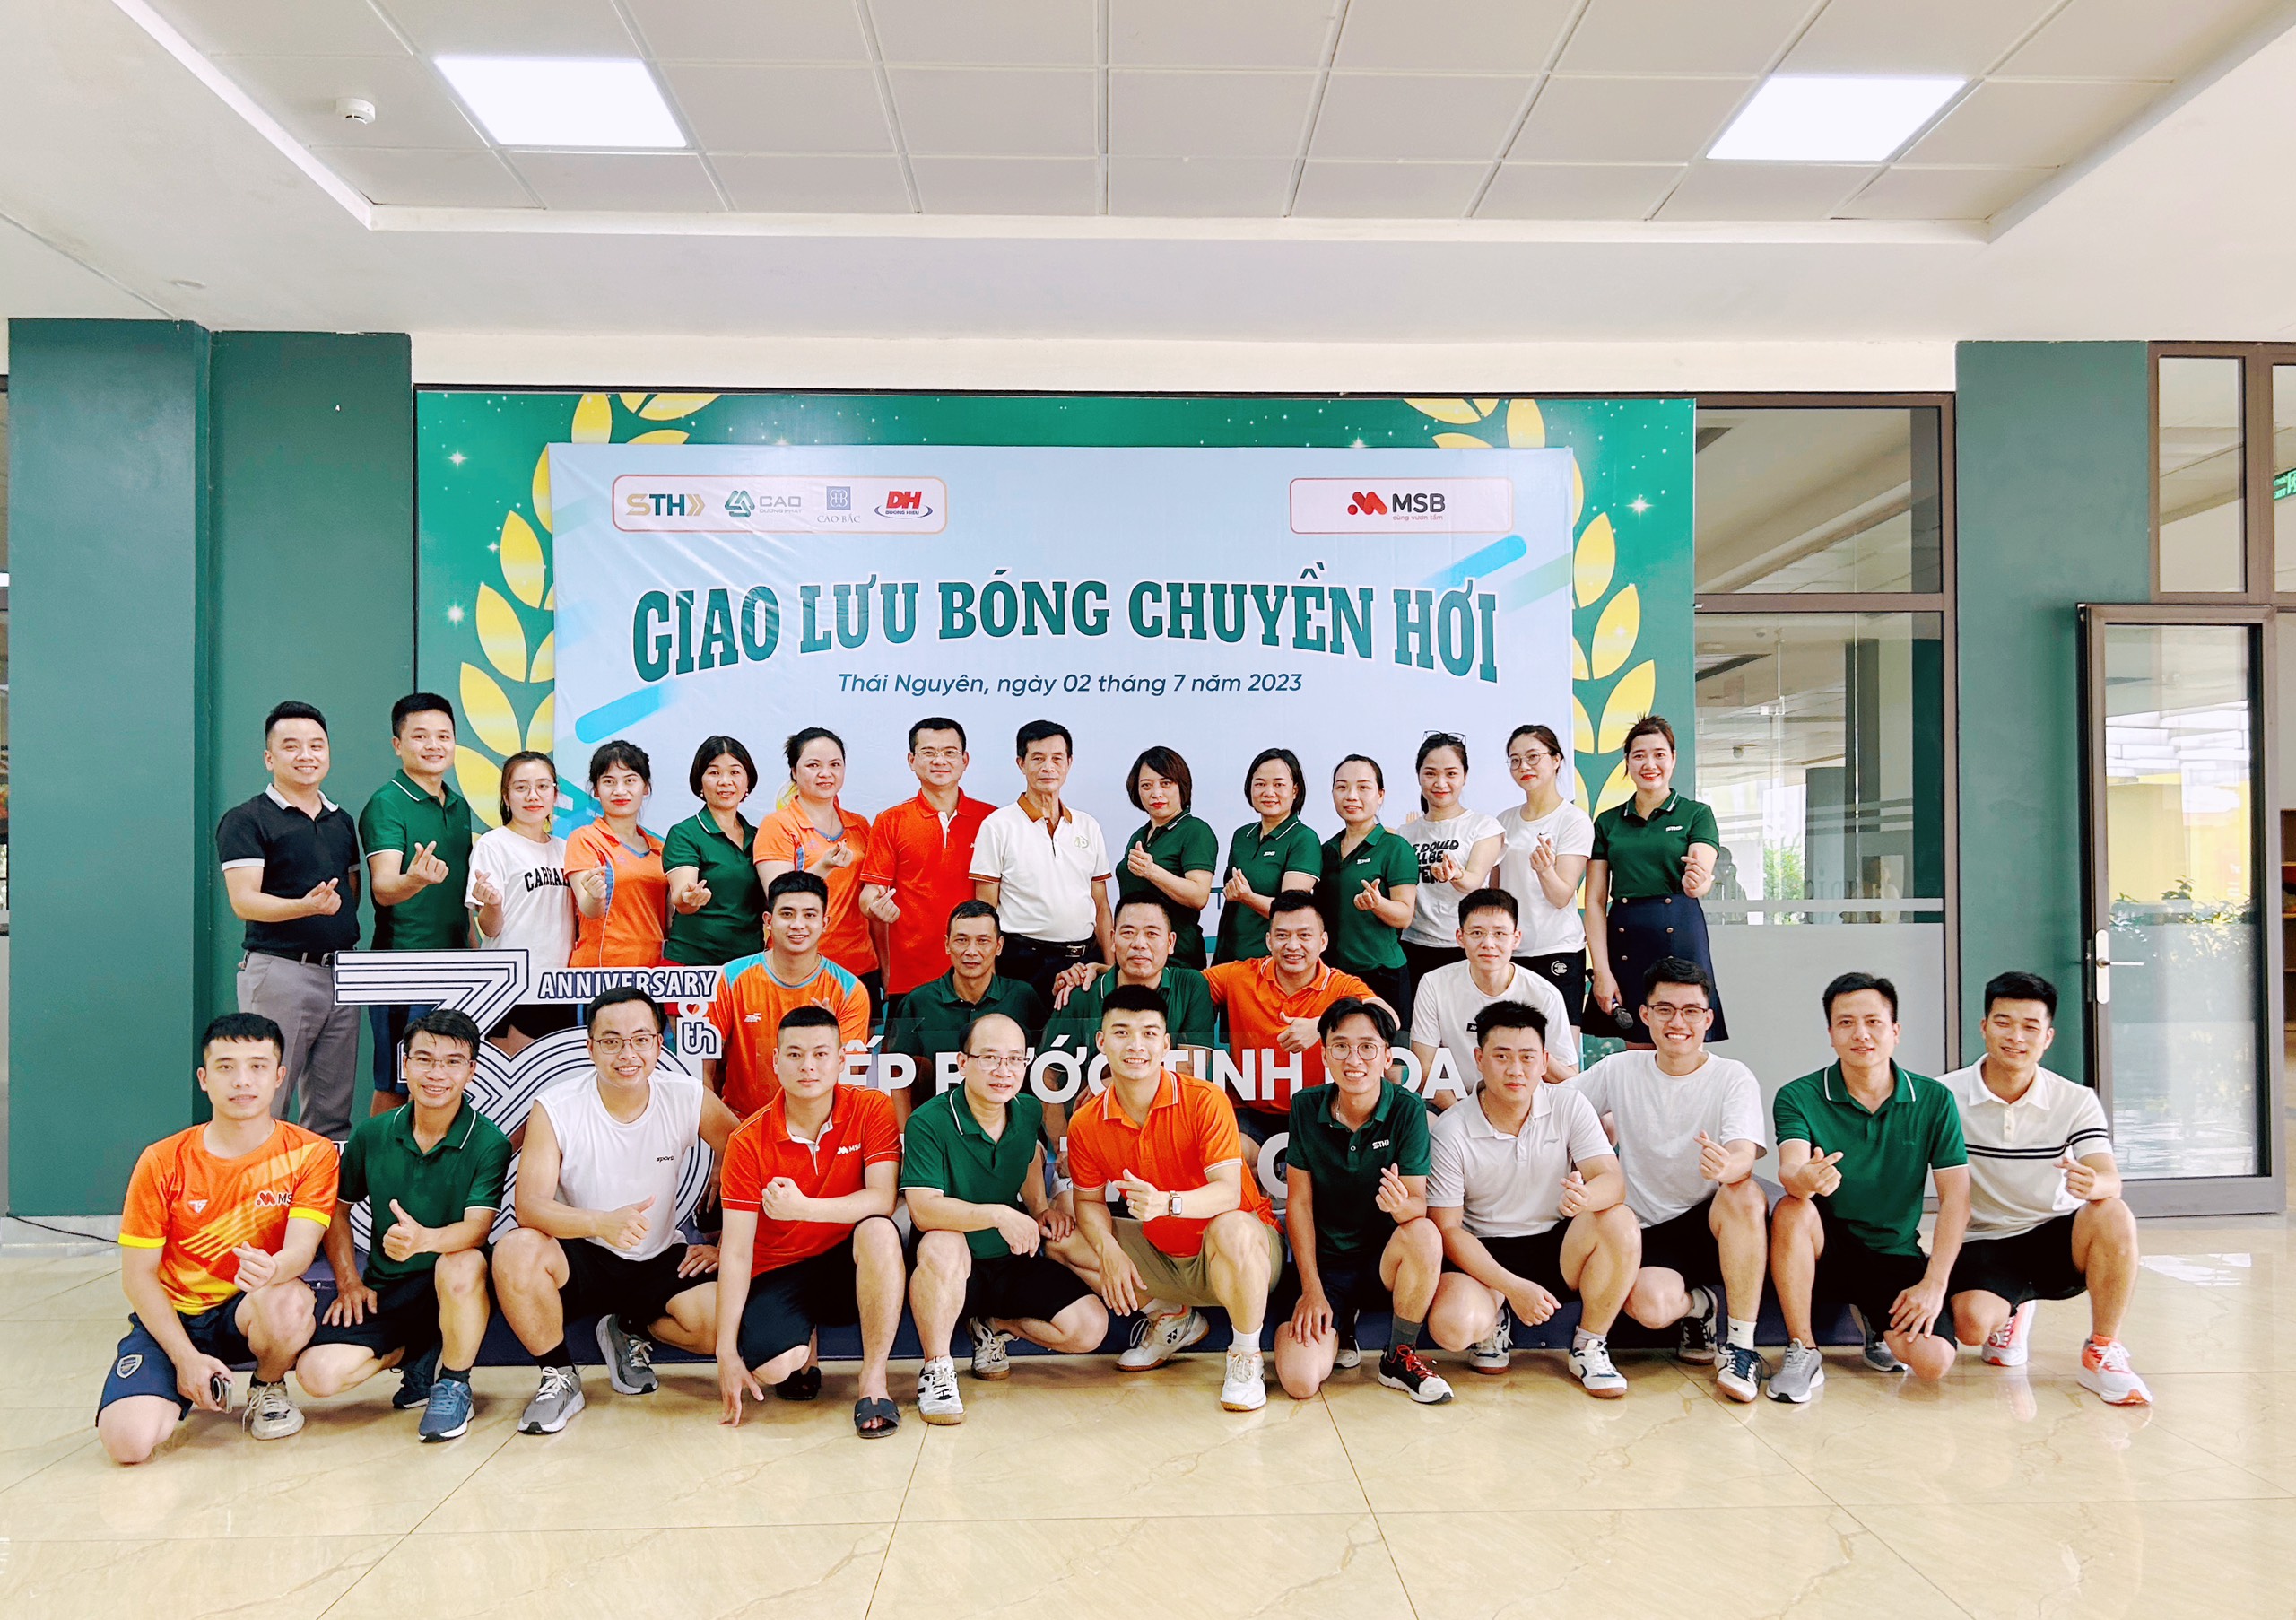 Giao lưu bóng chuyền hơi các đơn vị trong hệ thống Thái Hưng cùng Ngân hàng TMCP Hàng hải Việt Nam